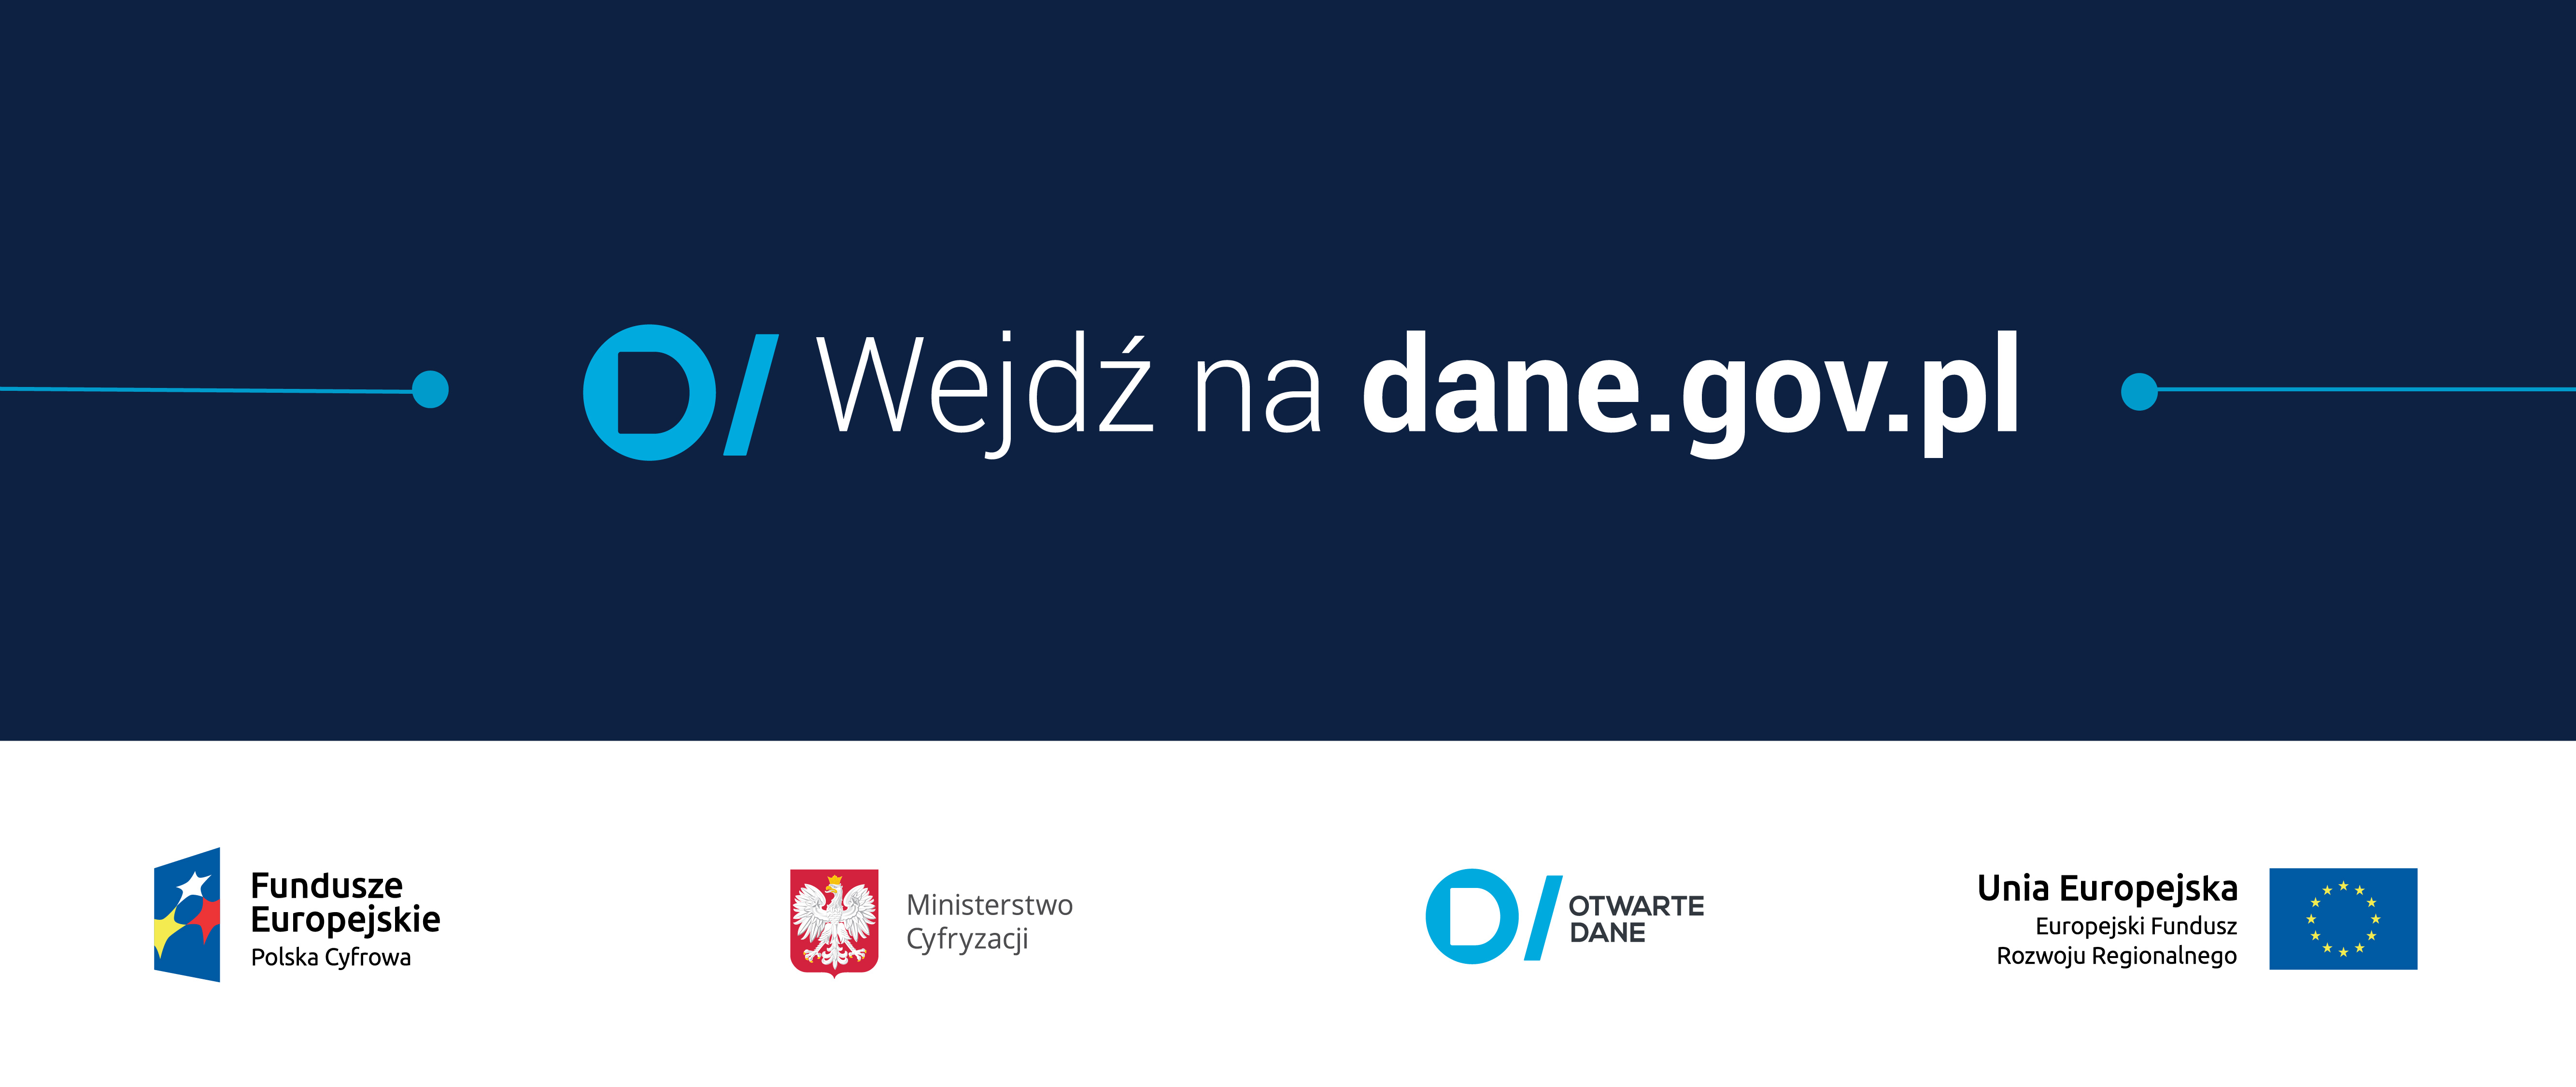 Przejdź do serwisu dane.gov.pl. Napis na banerze wejdź na dane.gov.pl, poniżej godło RP, flaga UE, znak graficzny danych publicznych i POPC